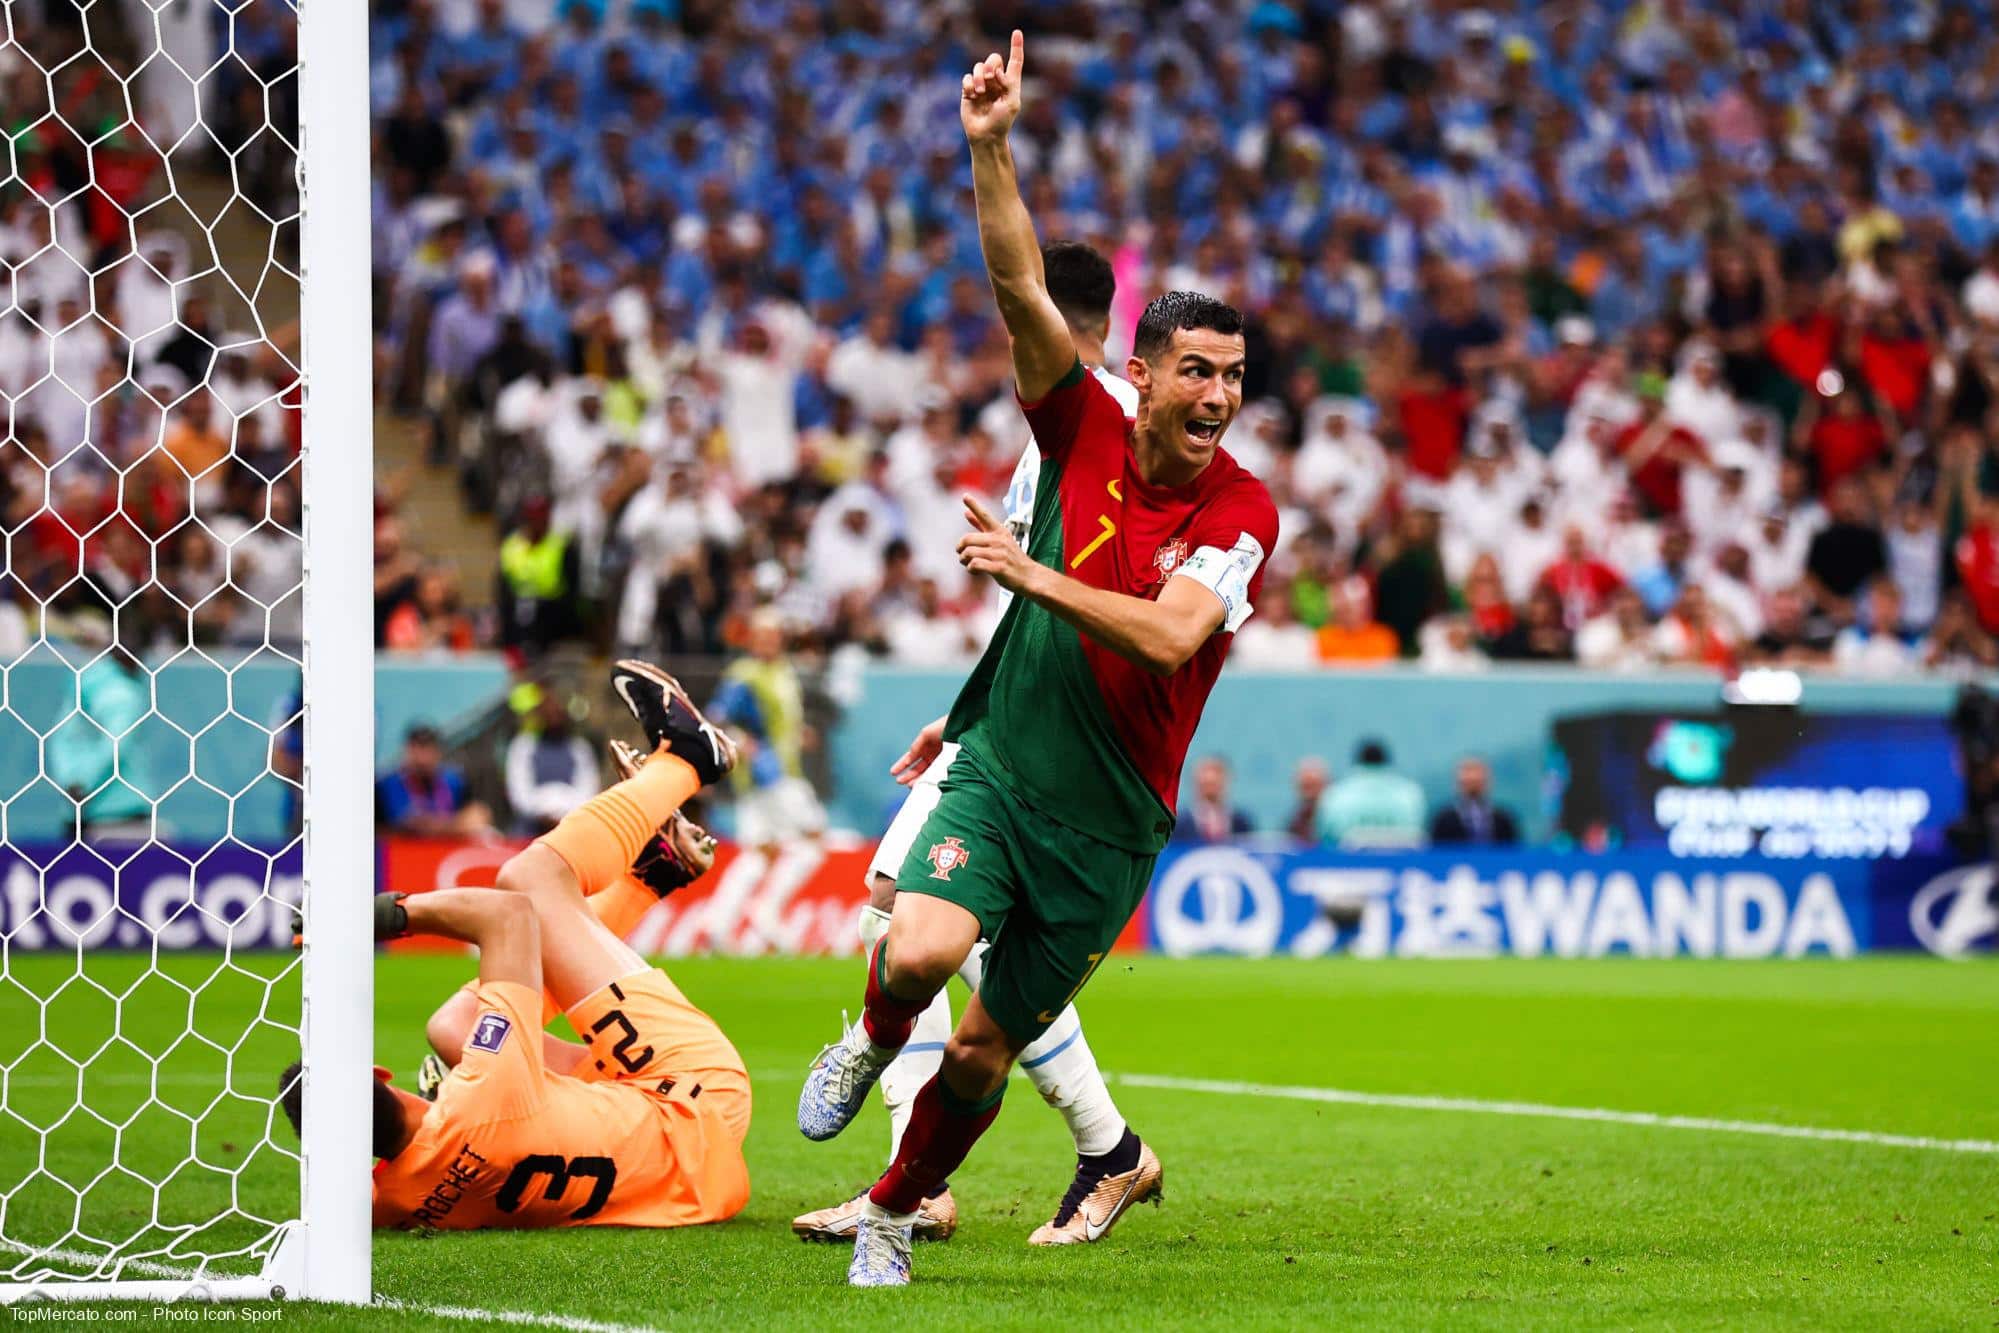 البرتغال الاقوى هجوميا في كأس العالم الحالية